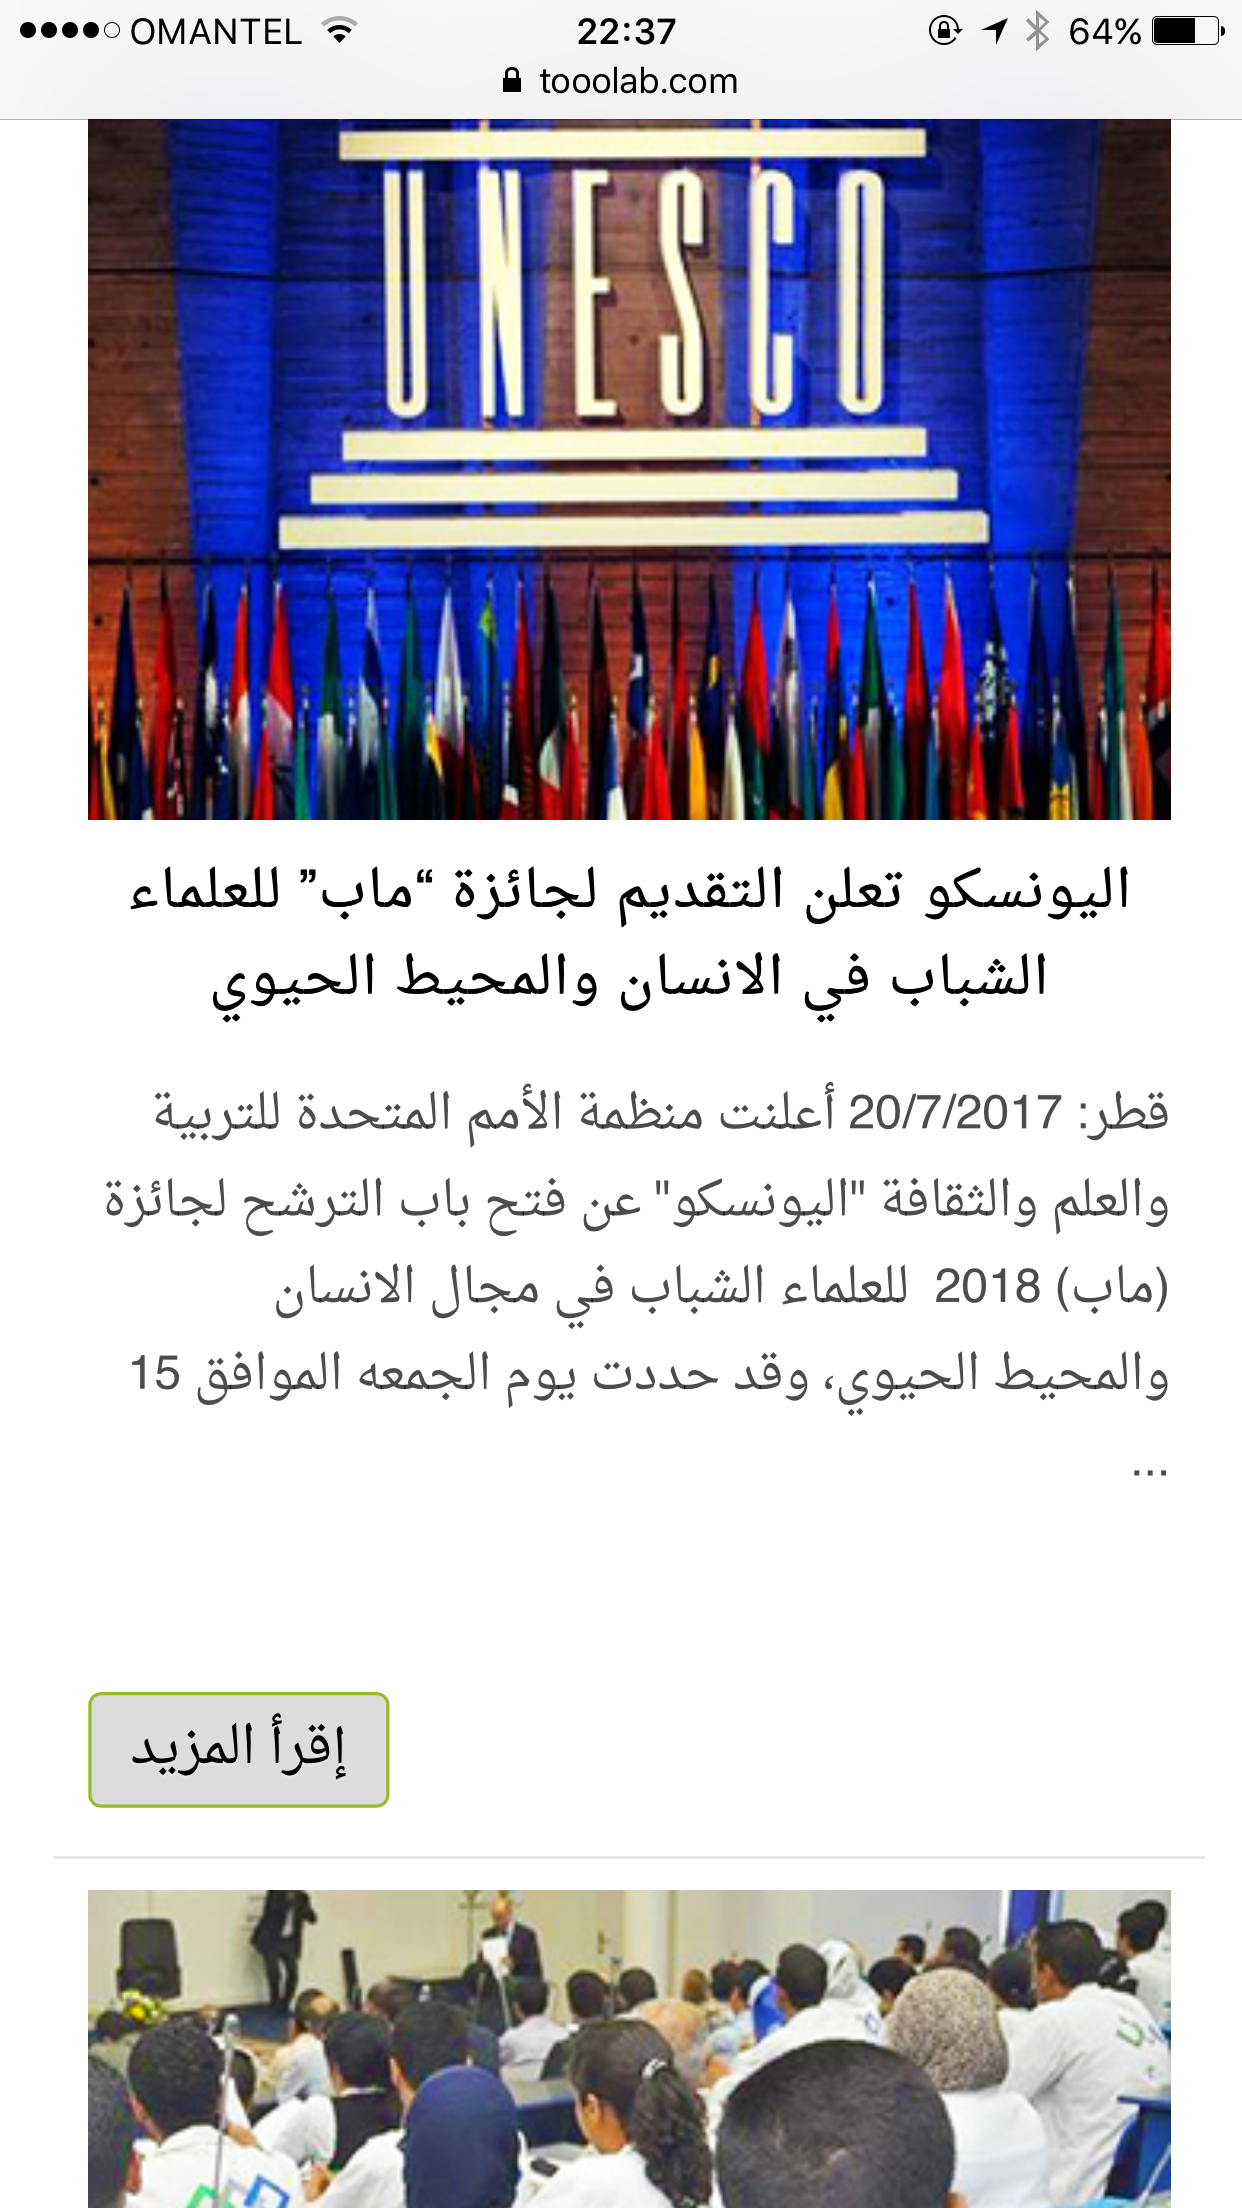 "طلاب" منصة إلكترونية عمانية توفر المعلومات والأخبار عن الدراسة في جامعات العالم